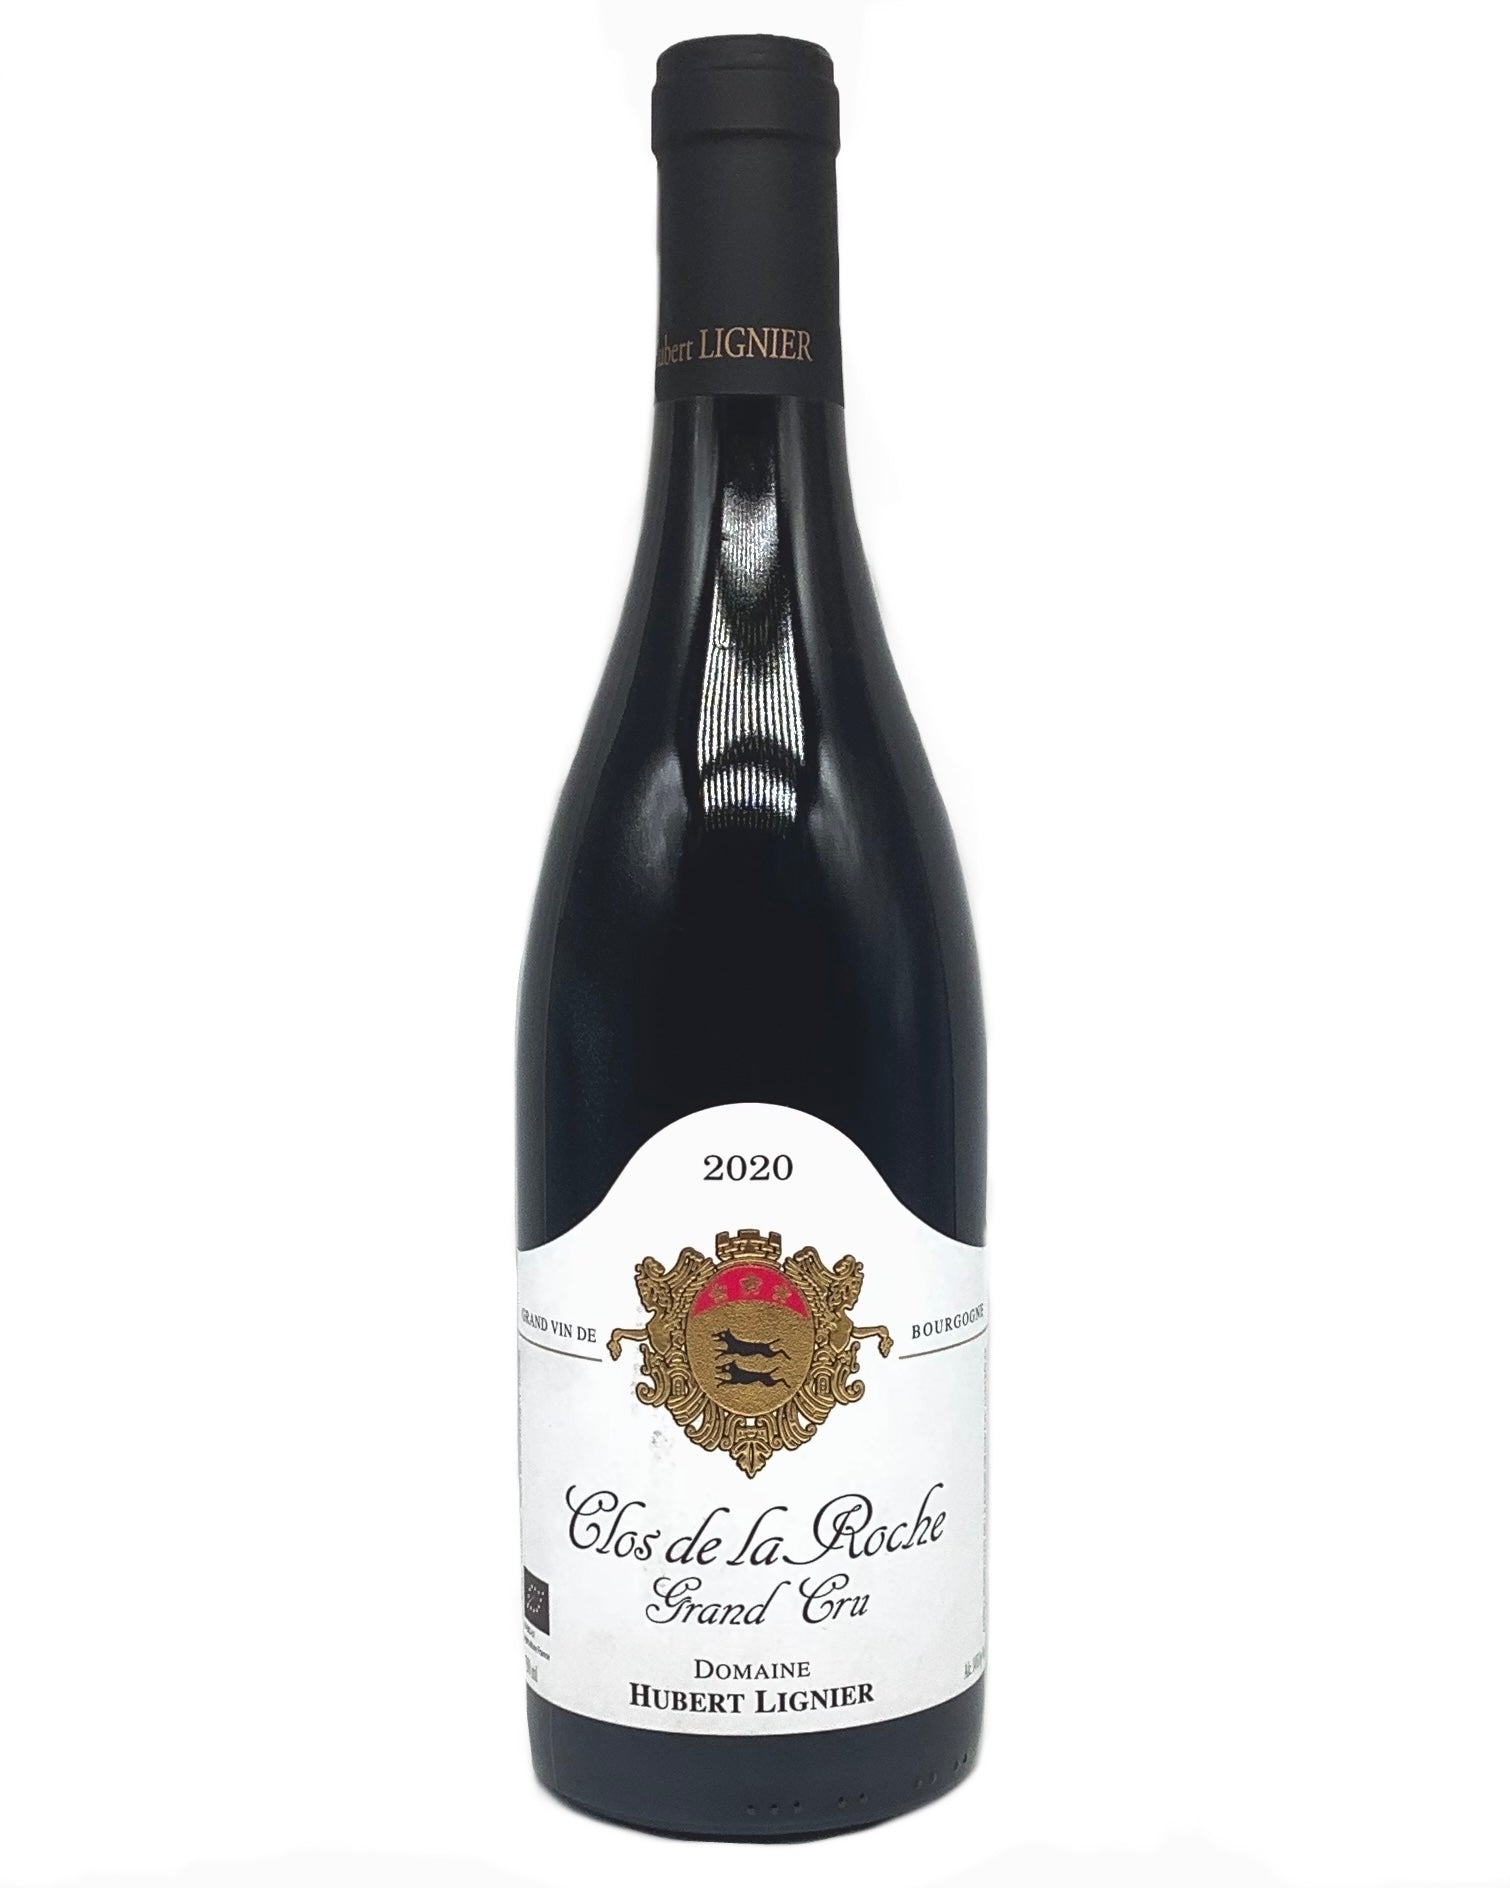 Domaine Hubert Lignier, Pinot Noir, Clos de la Roche Grand Cru, Morey-Saint-Denis, Côte de Nuits, Burgundy, France 2020